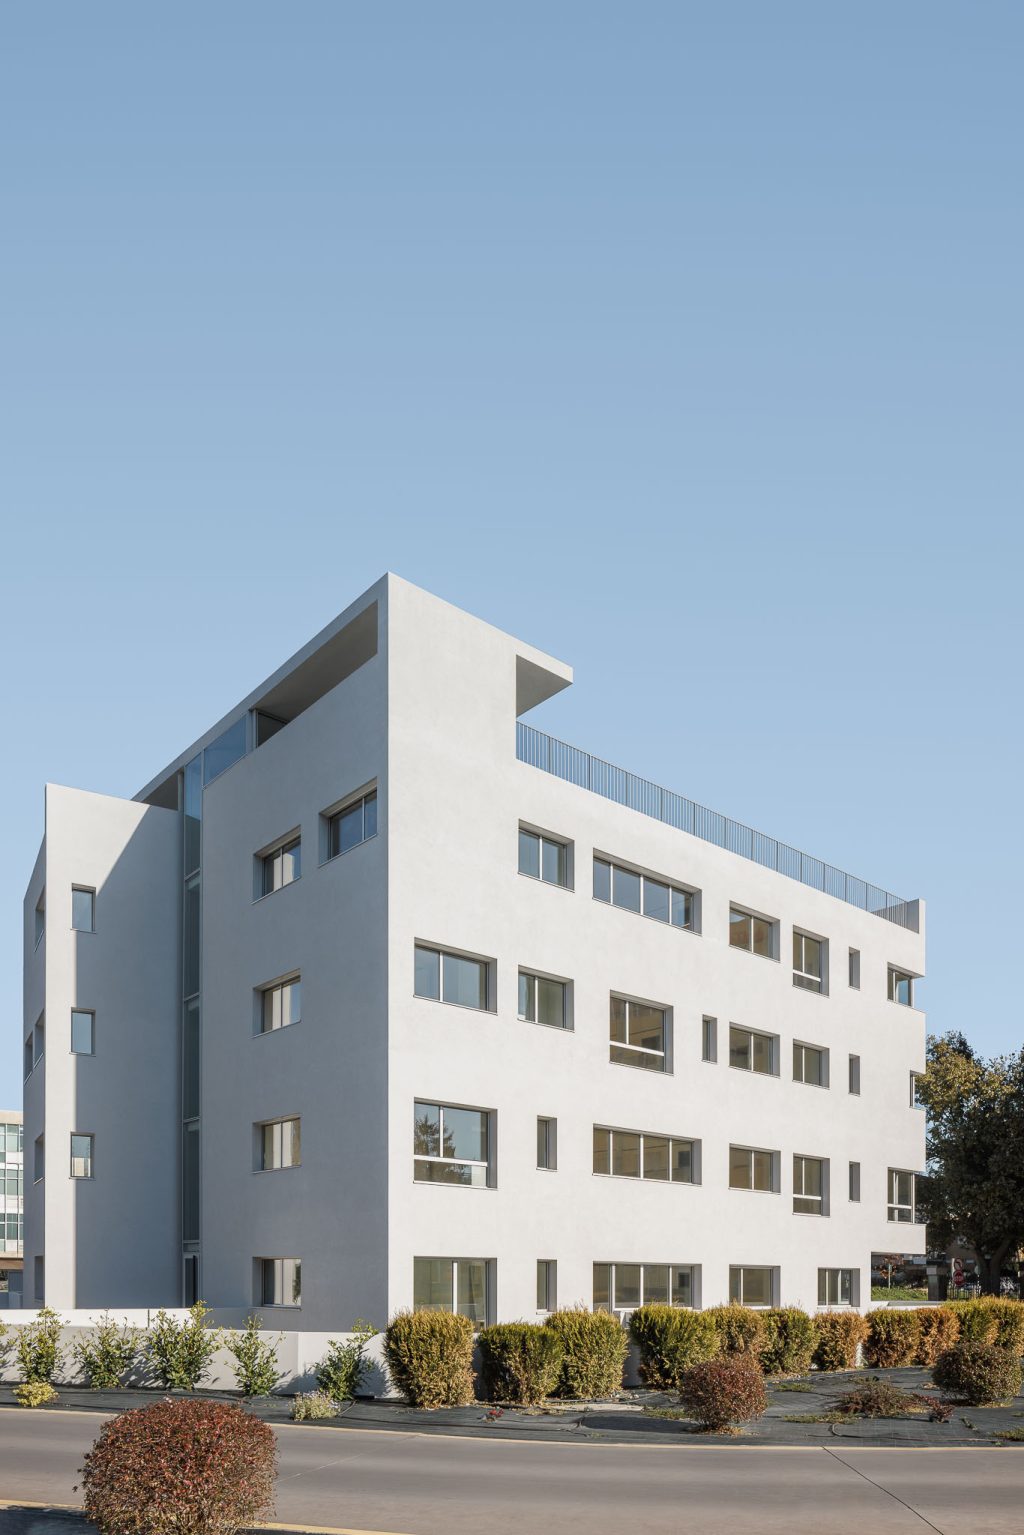 Nova Rio Housing šiuolaikinė architektūra, kuri meta iššūkį konvencijoms. Antonio Paulo Marquesas